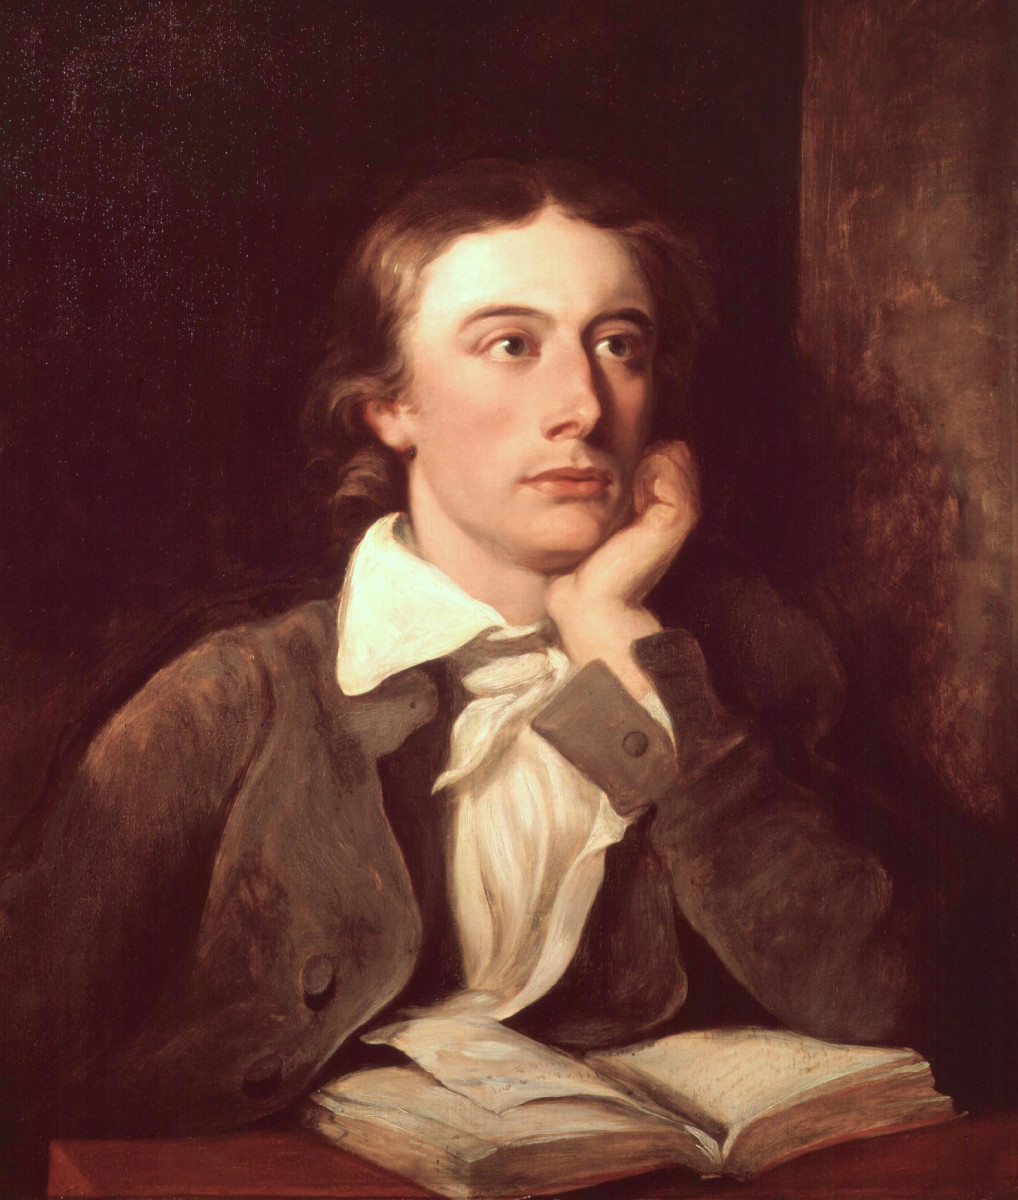 A portrait of John Keats by William Hilton.